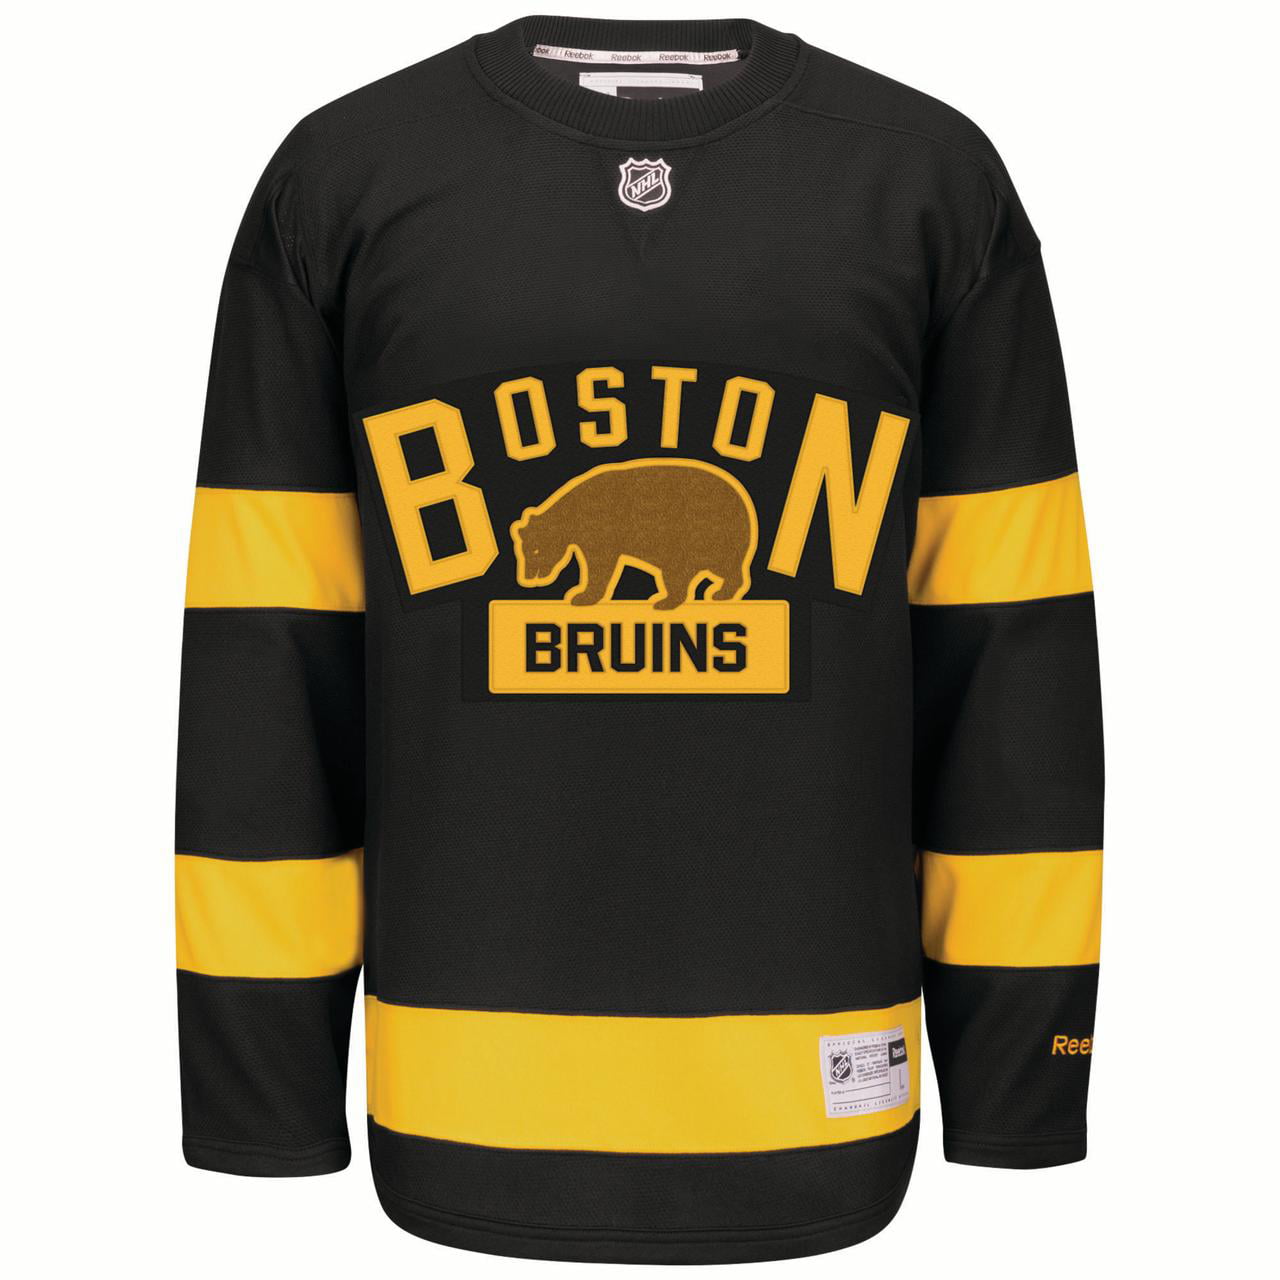 Boston Bruins Black 2016 Winter Classic 